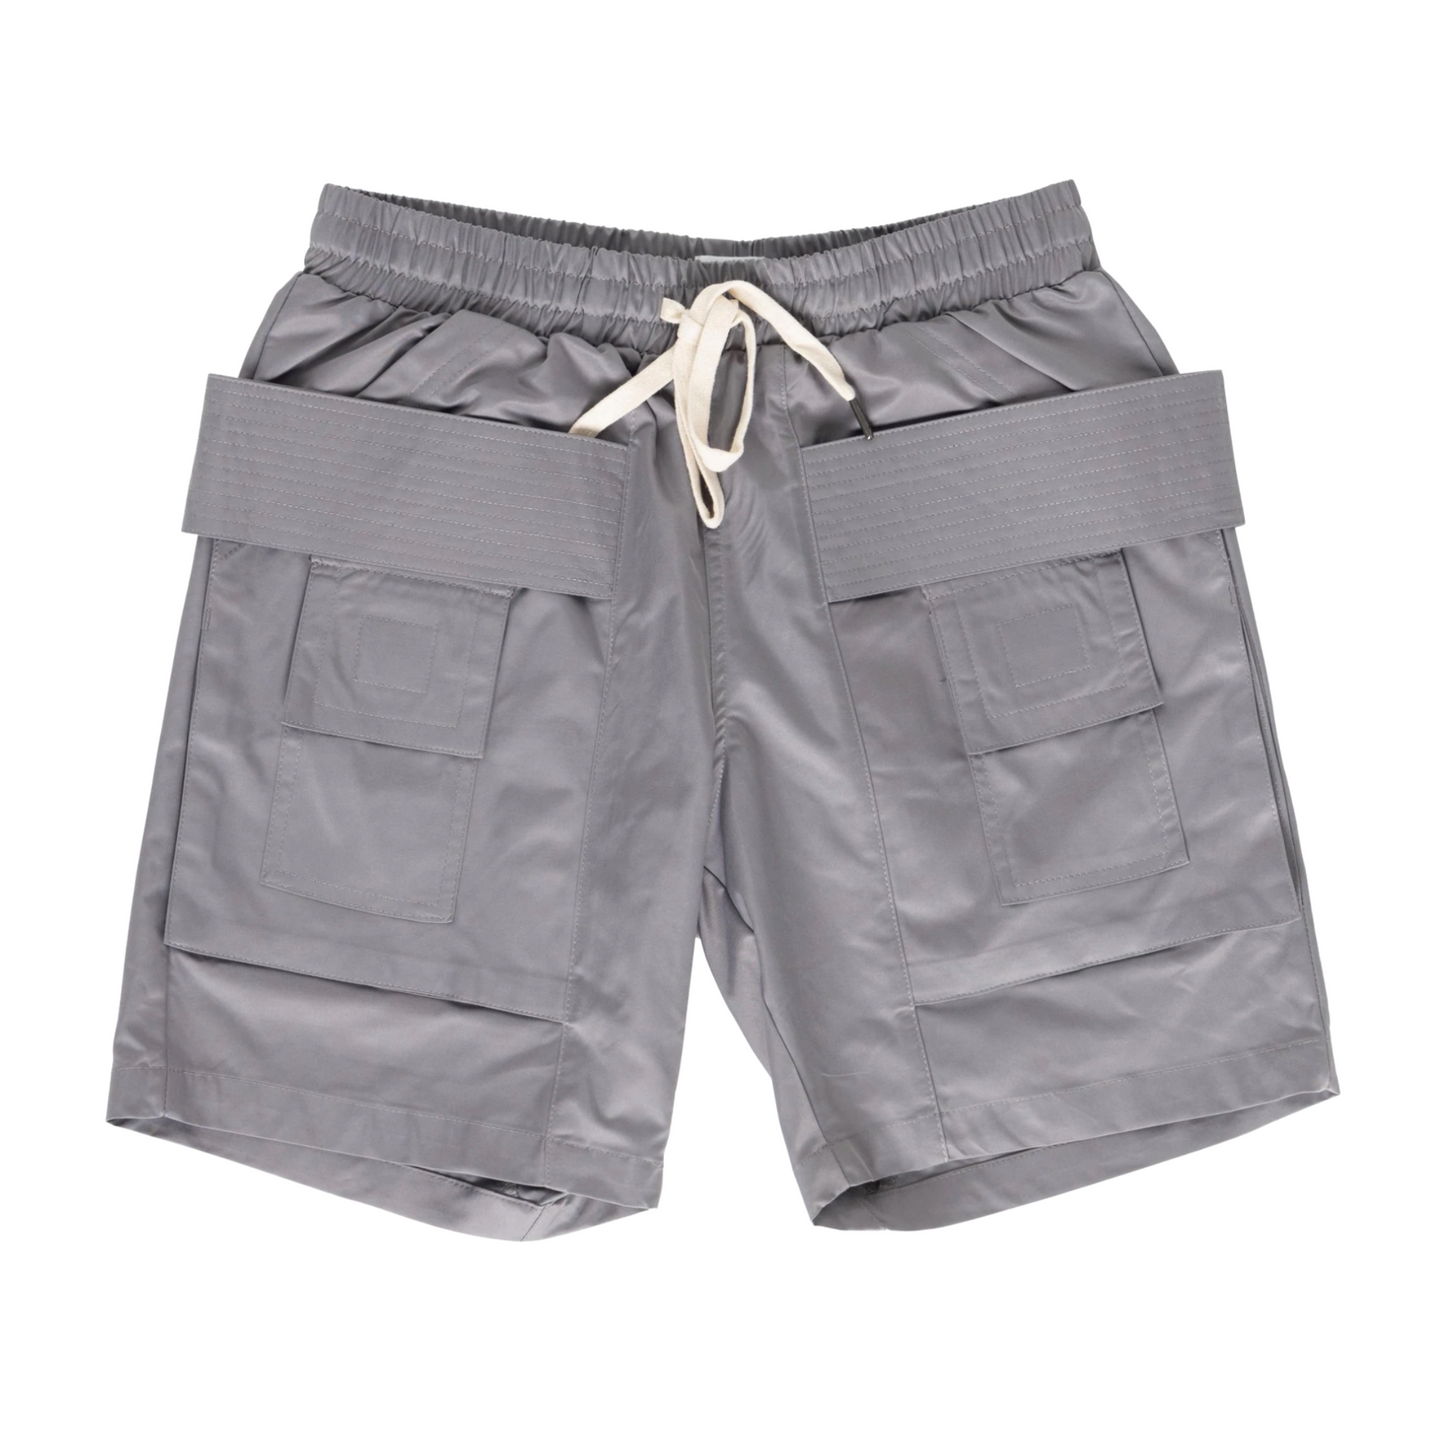 EPTM Shinobi Shorts (Grey)